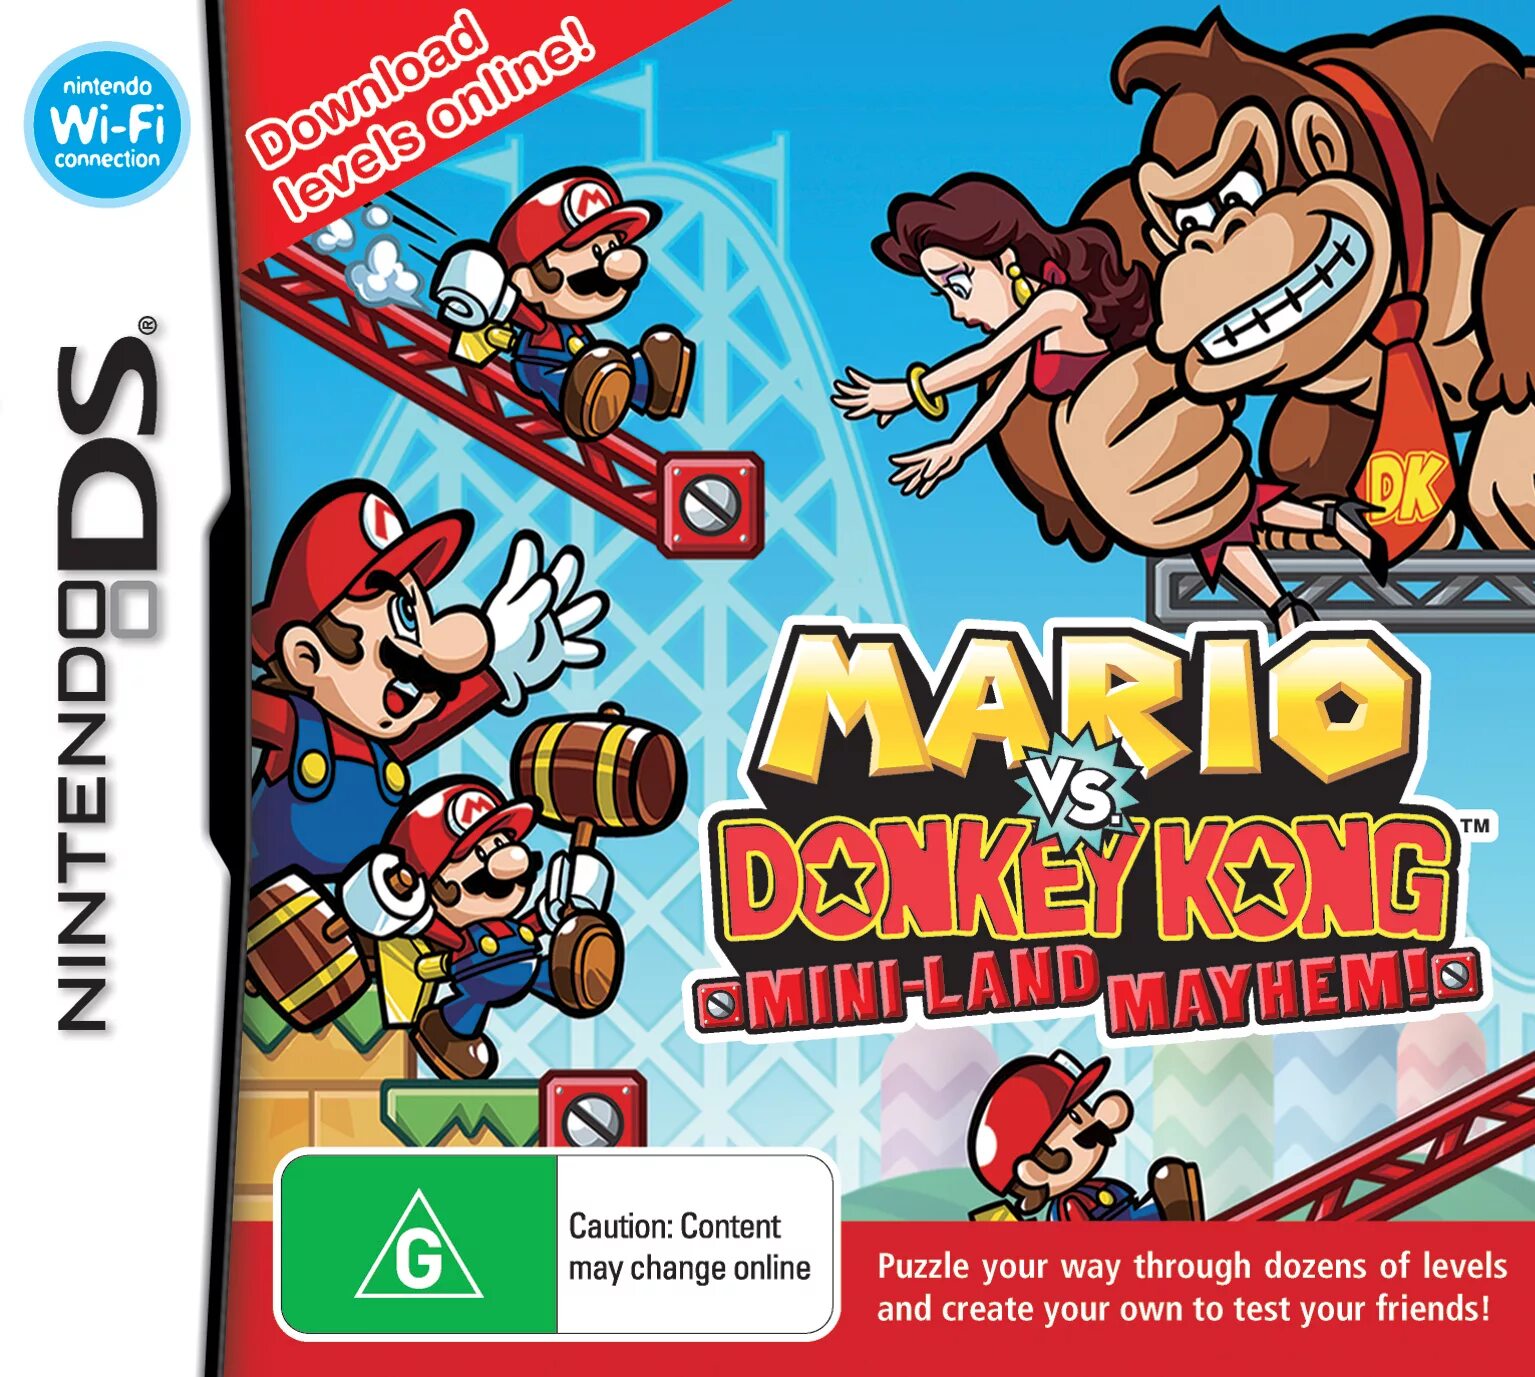 Mario vs donkey kong nintendo switch. Donkey Kong vs Mario игра. Марио Конг Нинтендо. Mario vs. Donkey Kong: Mini-Land Mayhem!. Mario vs Donkey Kong GBA.